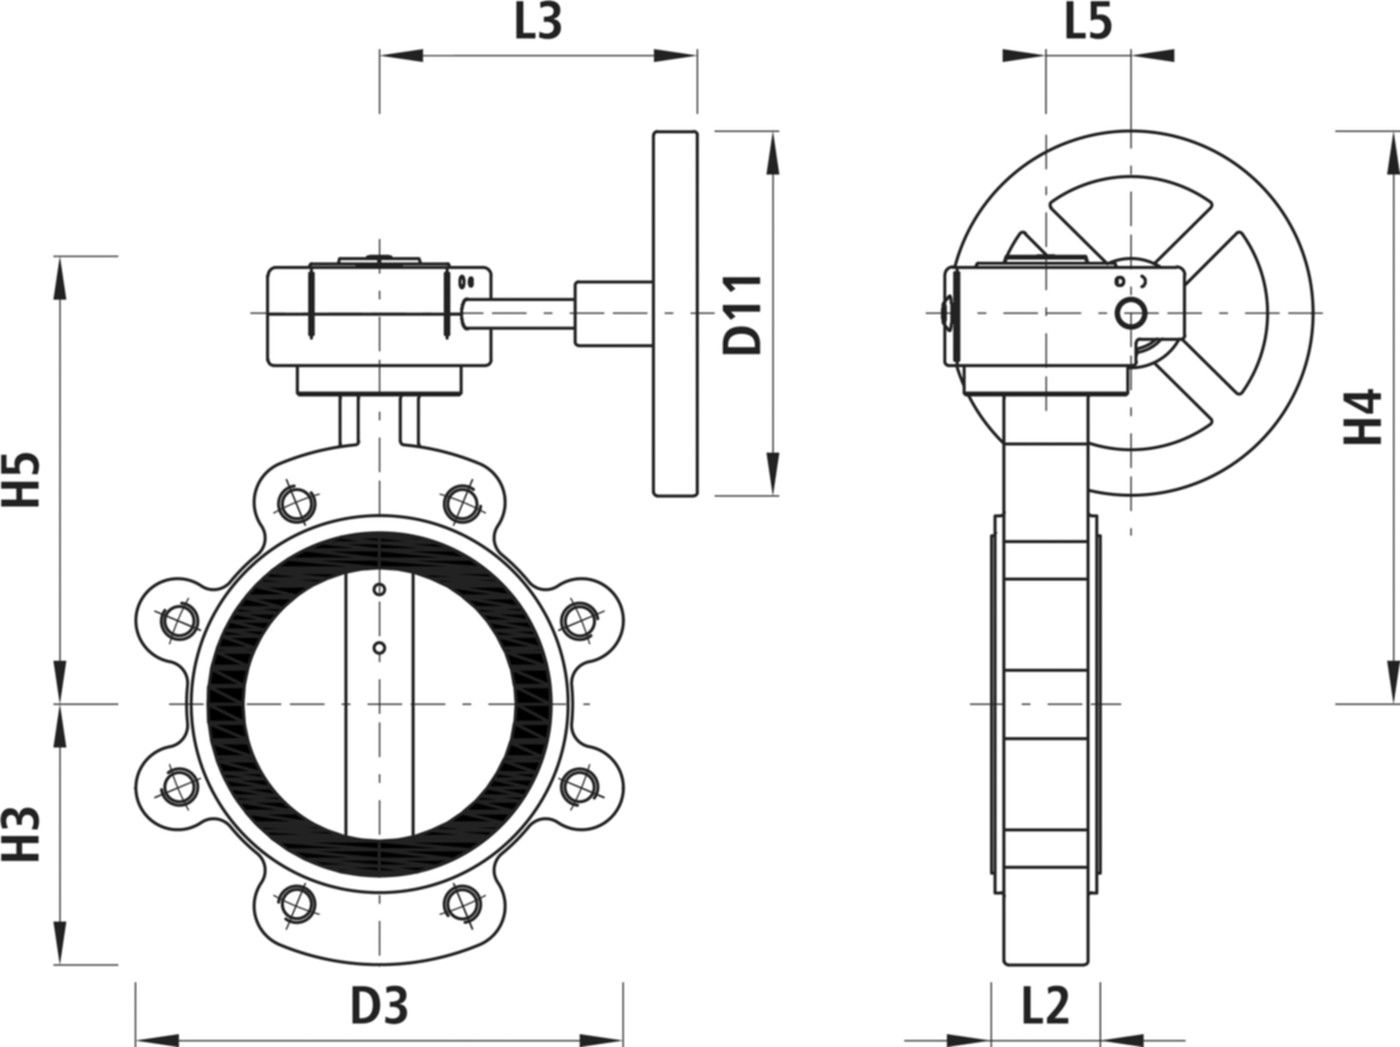 Absperrklappe mit Getriebe Typ LT 9937 für Gas DN 200 PN 10 - Hawle Absperrklappen